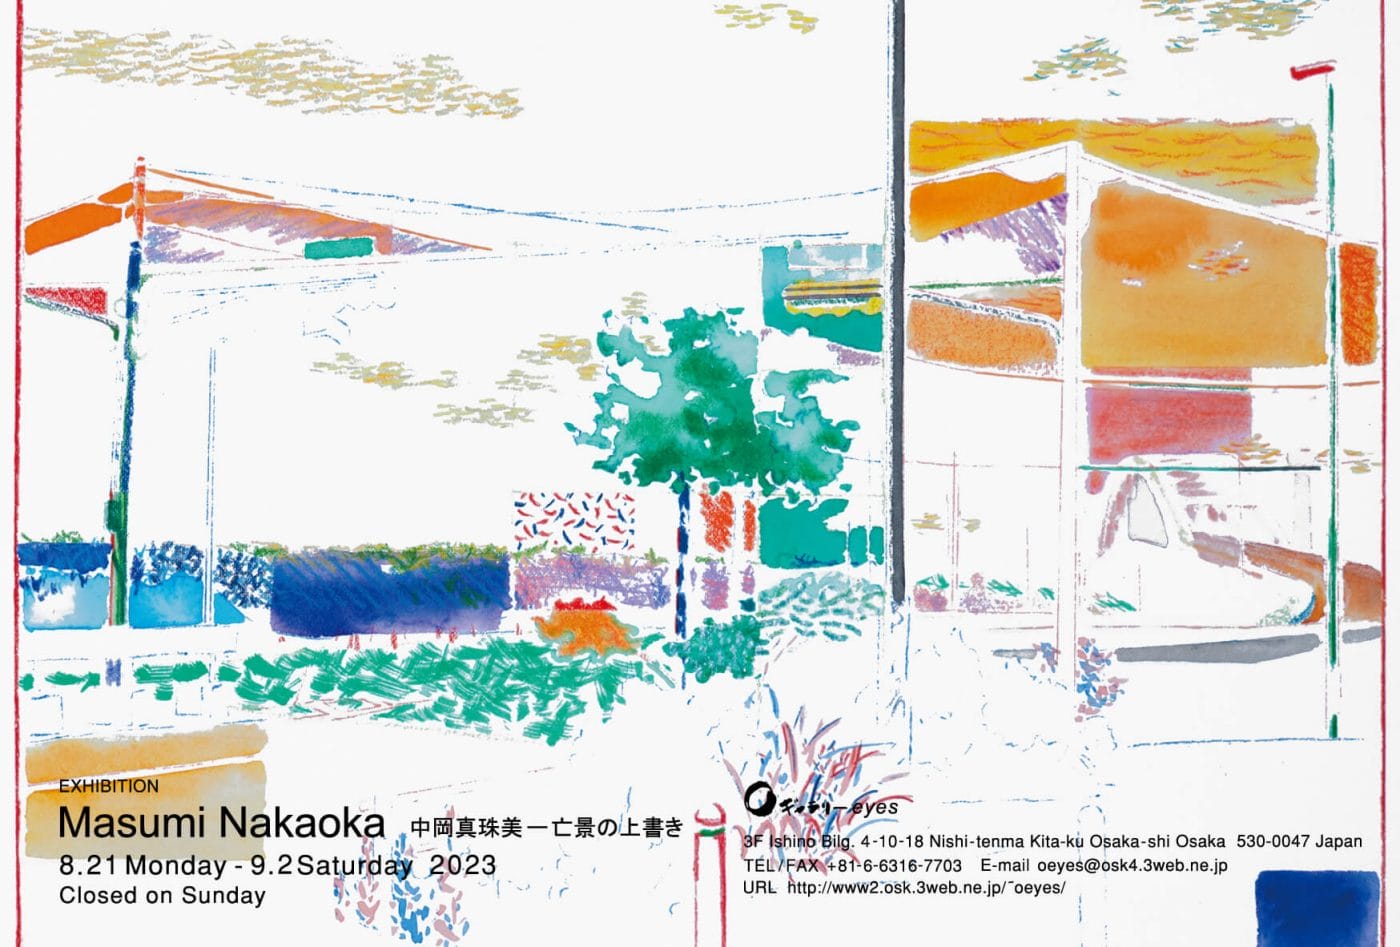 風景をモチーフに抽象画を描く中岡真珠美の個展「亡景の上書き」、Oギャラリーeyesにて開催。